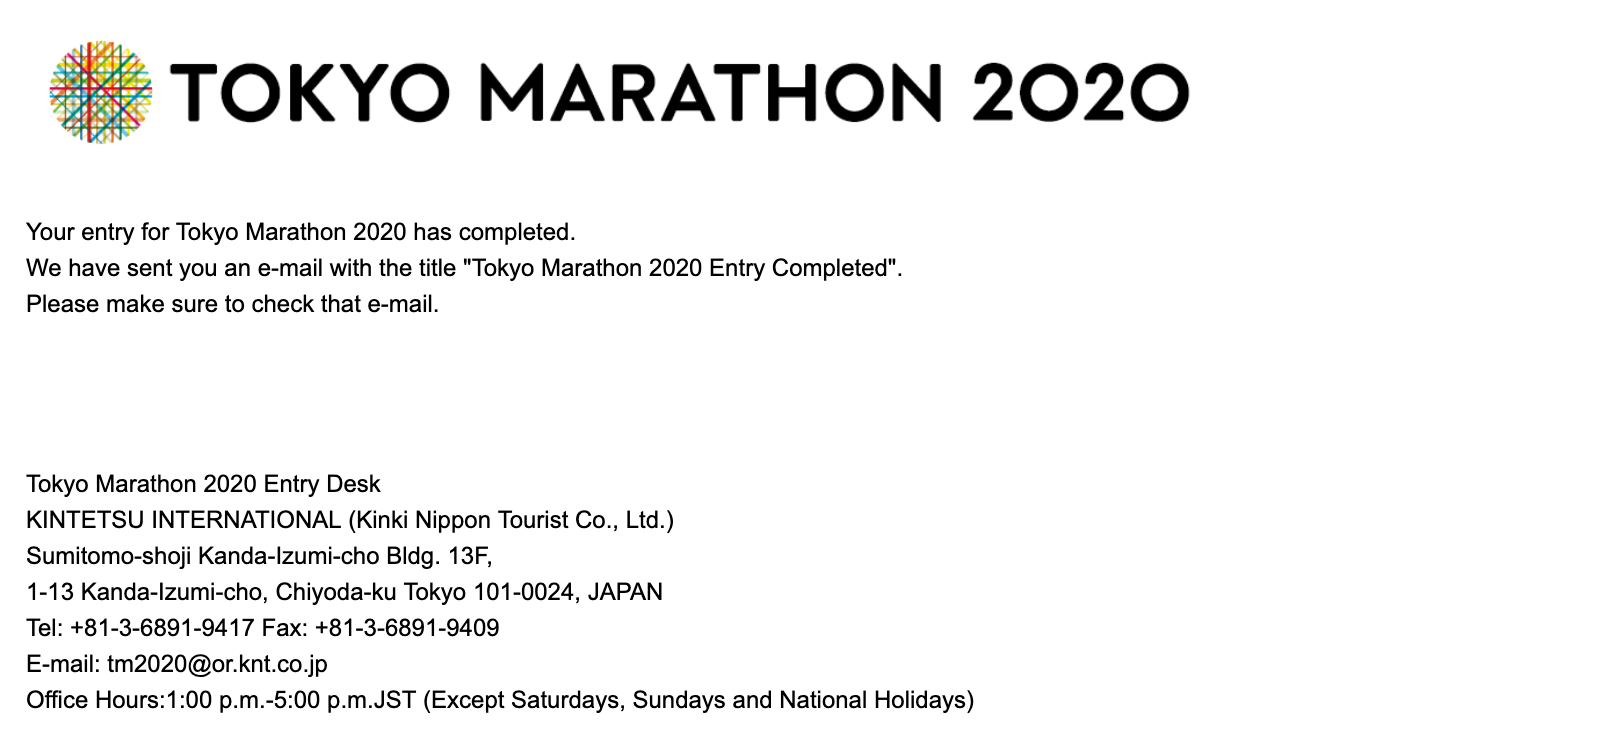 Hướng dẫn đăng ký xổ số dành suất tham gia Tokyo Marathon 2020 - dang ky tokyo marathon 2020 7